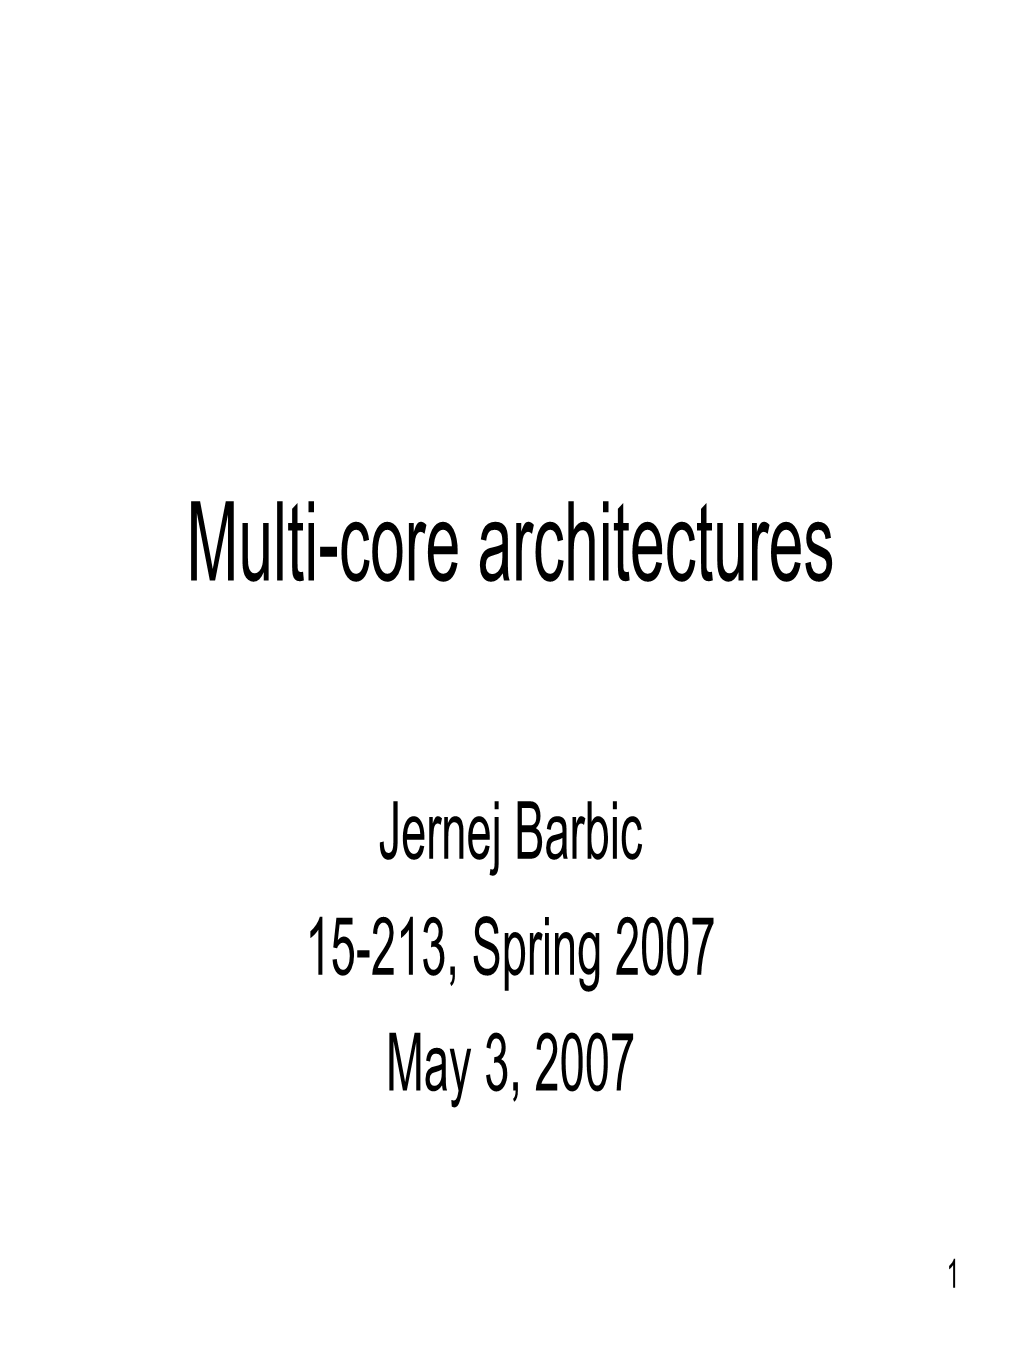 Multi-Core Architectures